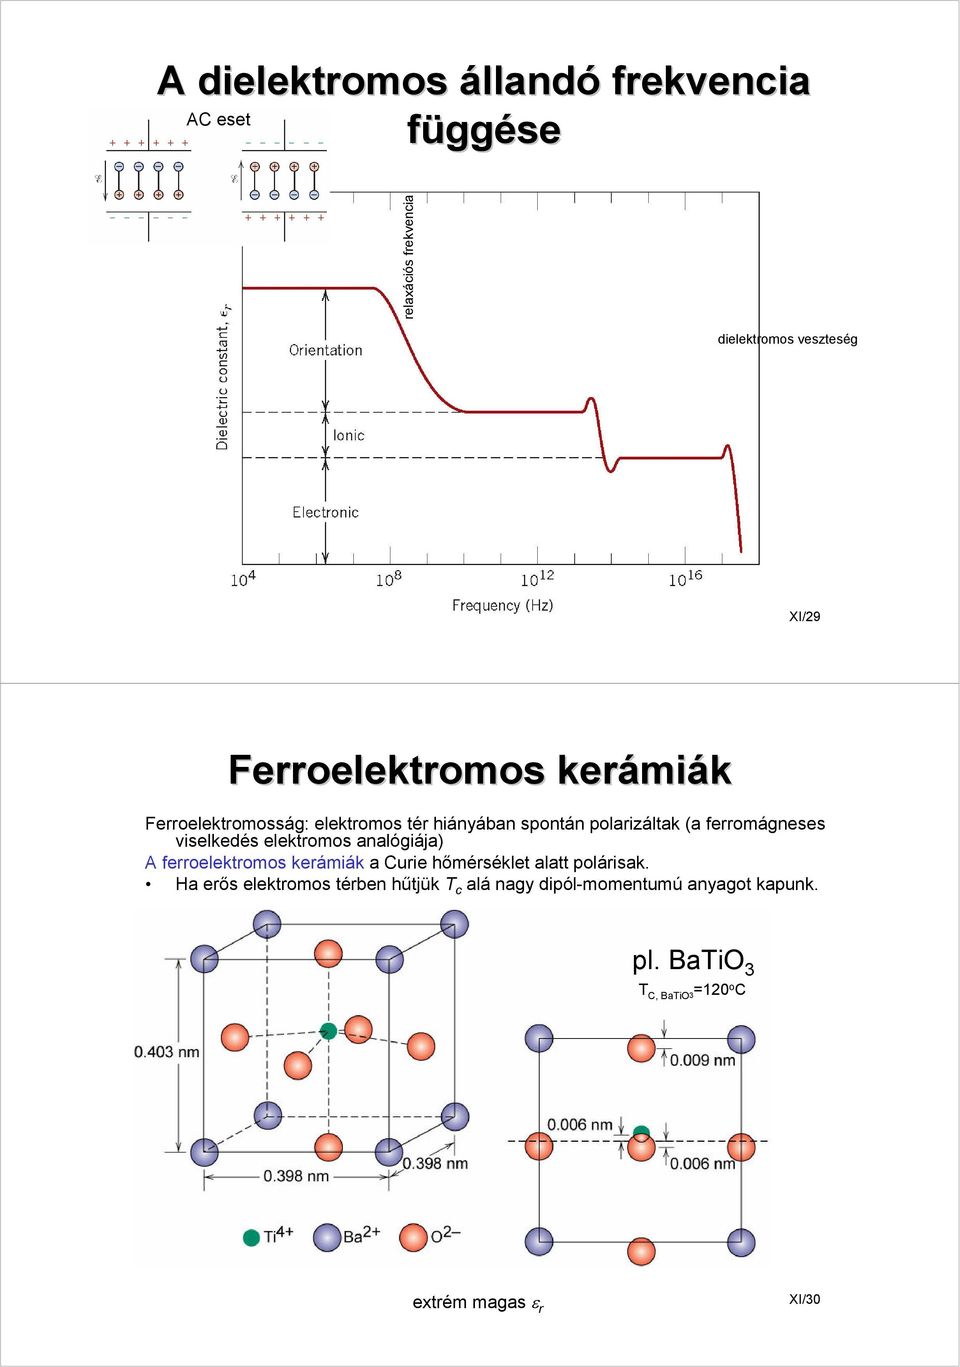 ferromágneses viselkedés elektromos analógiája) A ferroelektromos kerámiák a Curie hőmérséklet alatt polárisak.